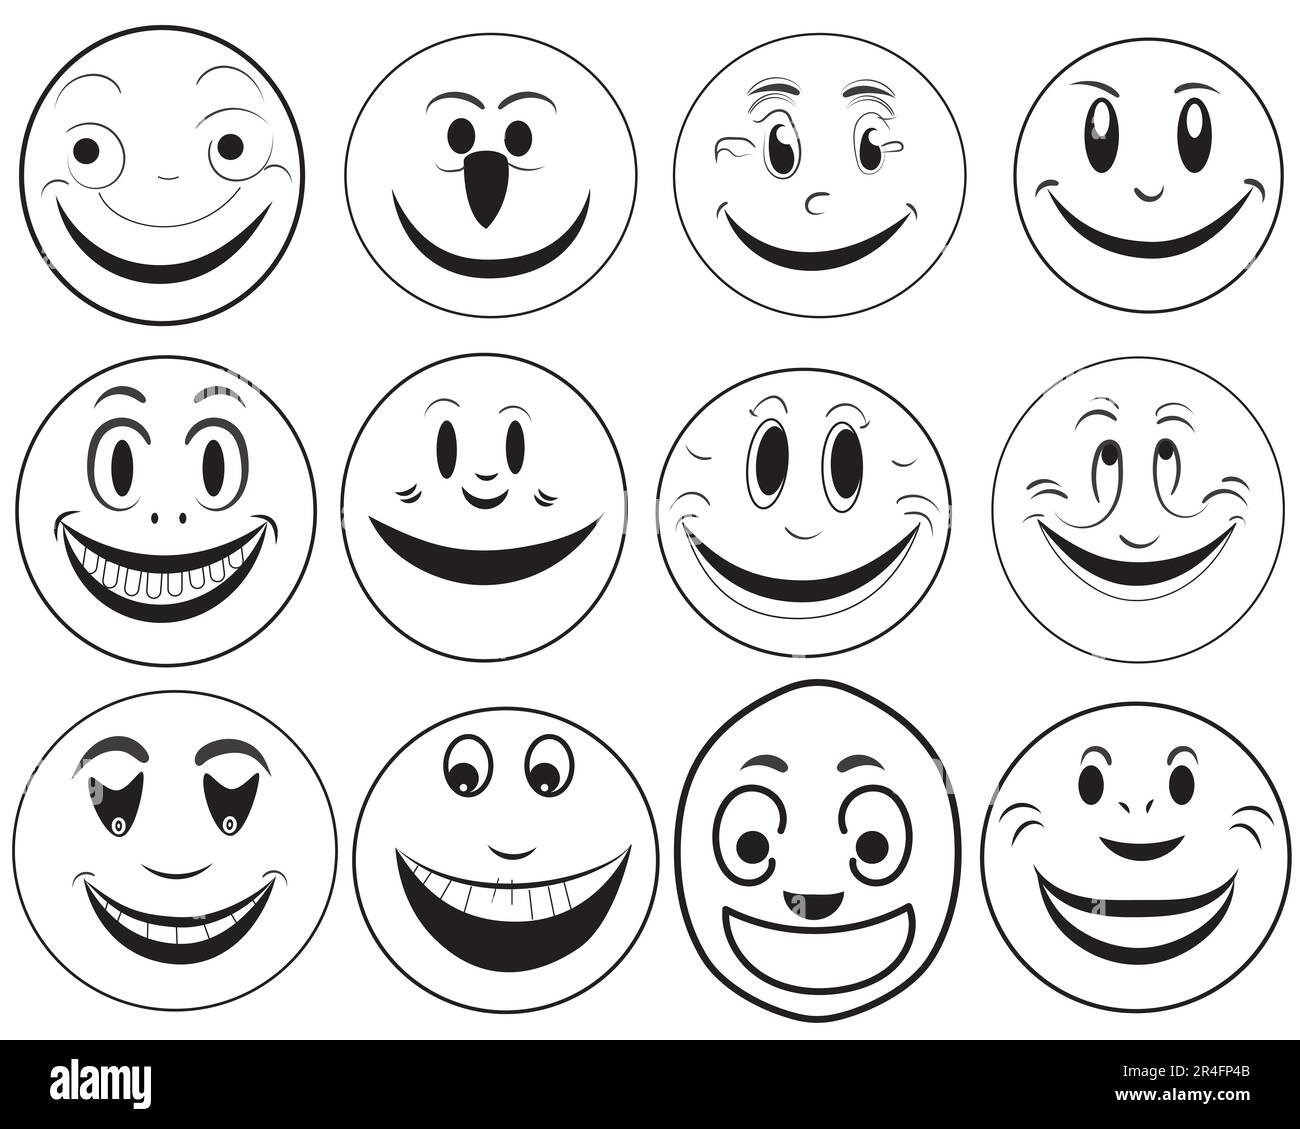 Eine Reihe von Emoji-Doodle-Ikonen, die verschiedene Emotionen und Stimmungen darstellen, wie Glück, Traurigkeit, Lächeln und Humor, In Form von Emoji-Gesichtern Stockfoto